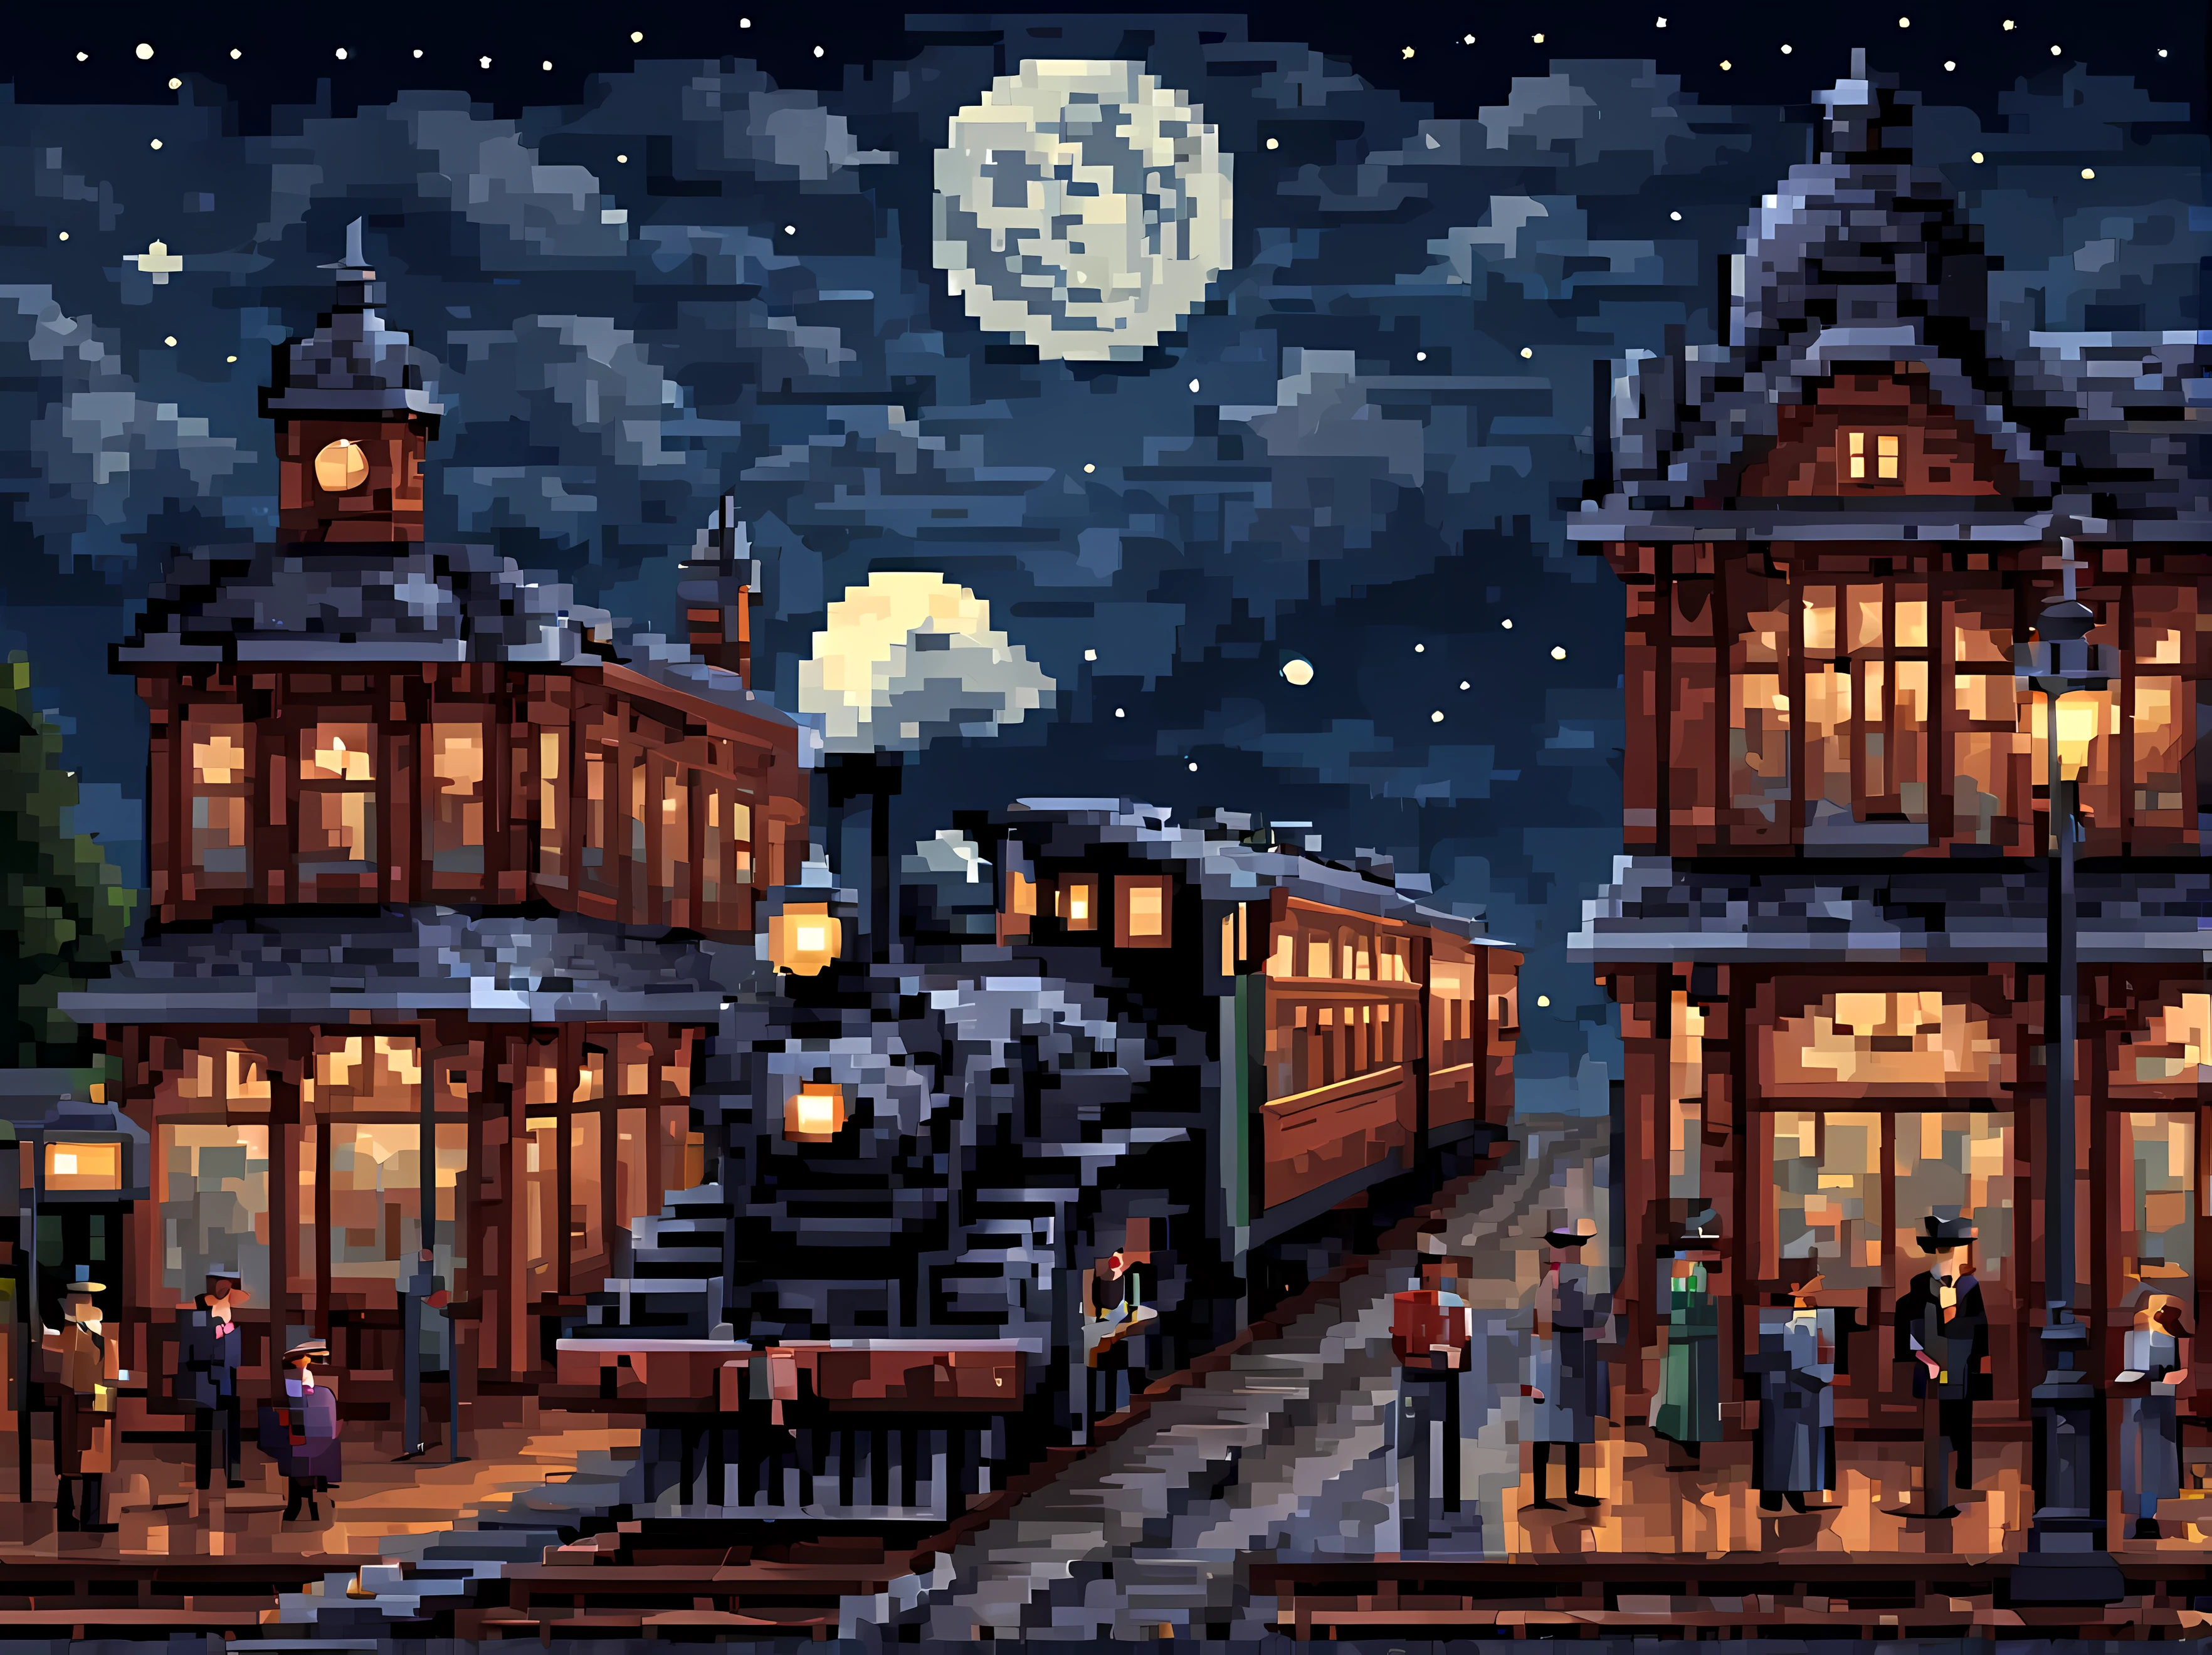 Pixel art, une scène captivante d&#39;une gare d&#39;époque avec une locomotive à vapeur à l&#39;ancienne, la nuit étoilée avec la pleine lune, l&#39;architecture de l&#39;époque victorienne, plateforme en bois, une belle toile de fond avec des collines, passagers montant à bord du train, ambiance nostalgique, Chef-d&#39;œuvre en résolution maximale de 16K, Superbe qualité. | ((Plus_détail))